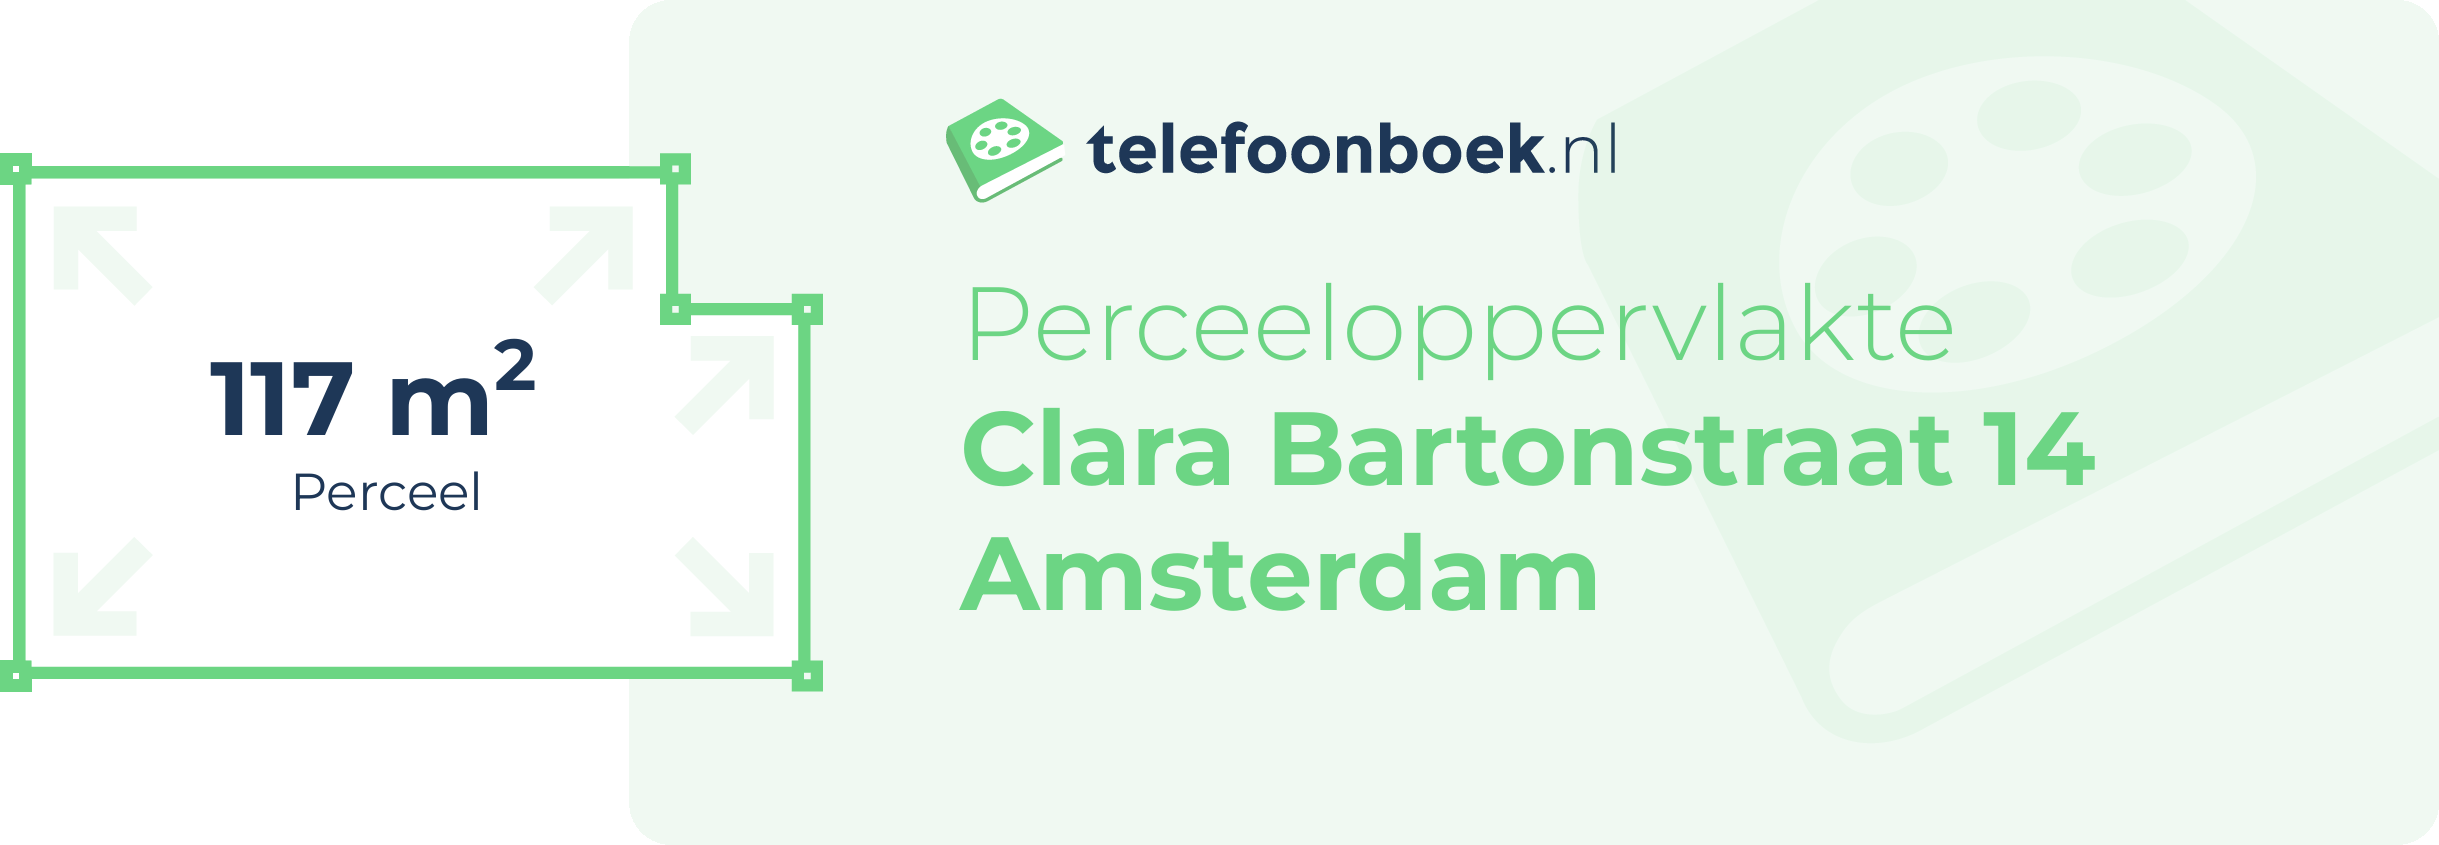 Perceeloppervlakte Clara Bartonstraat 14 Amsterdam